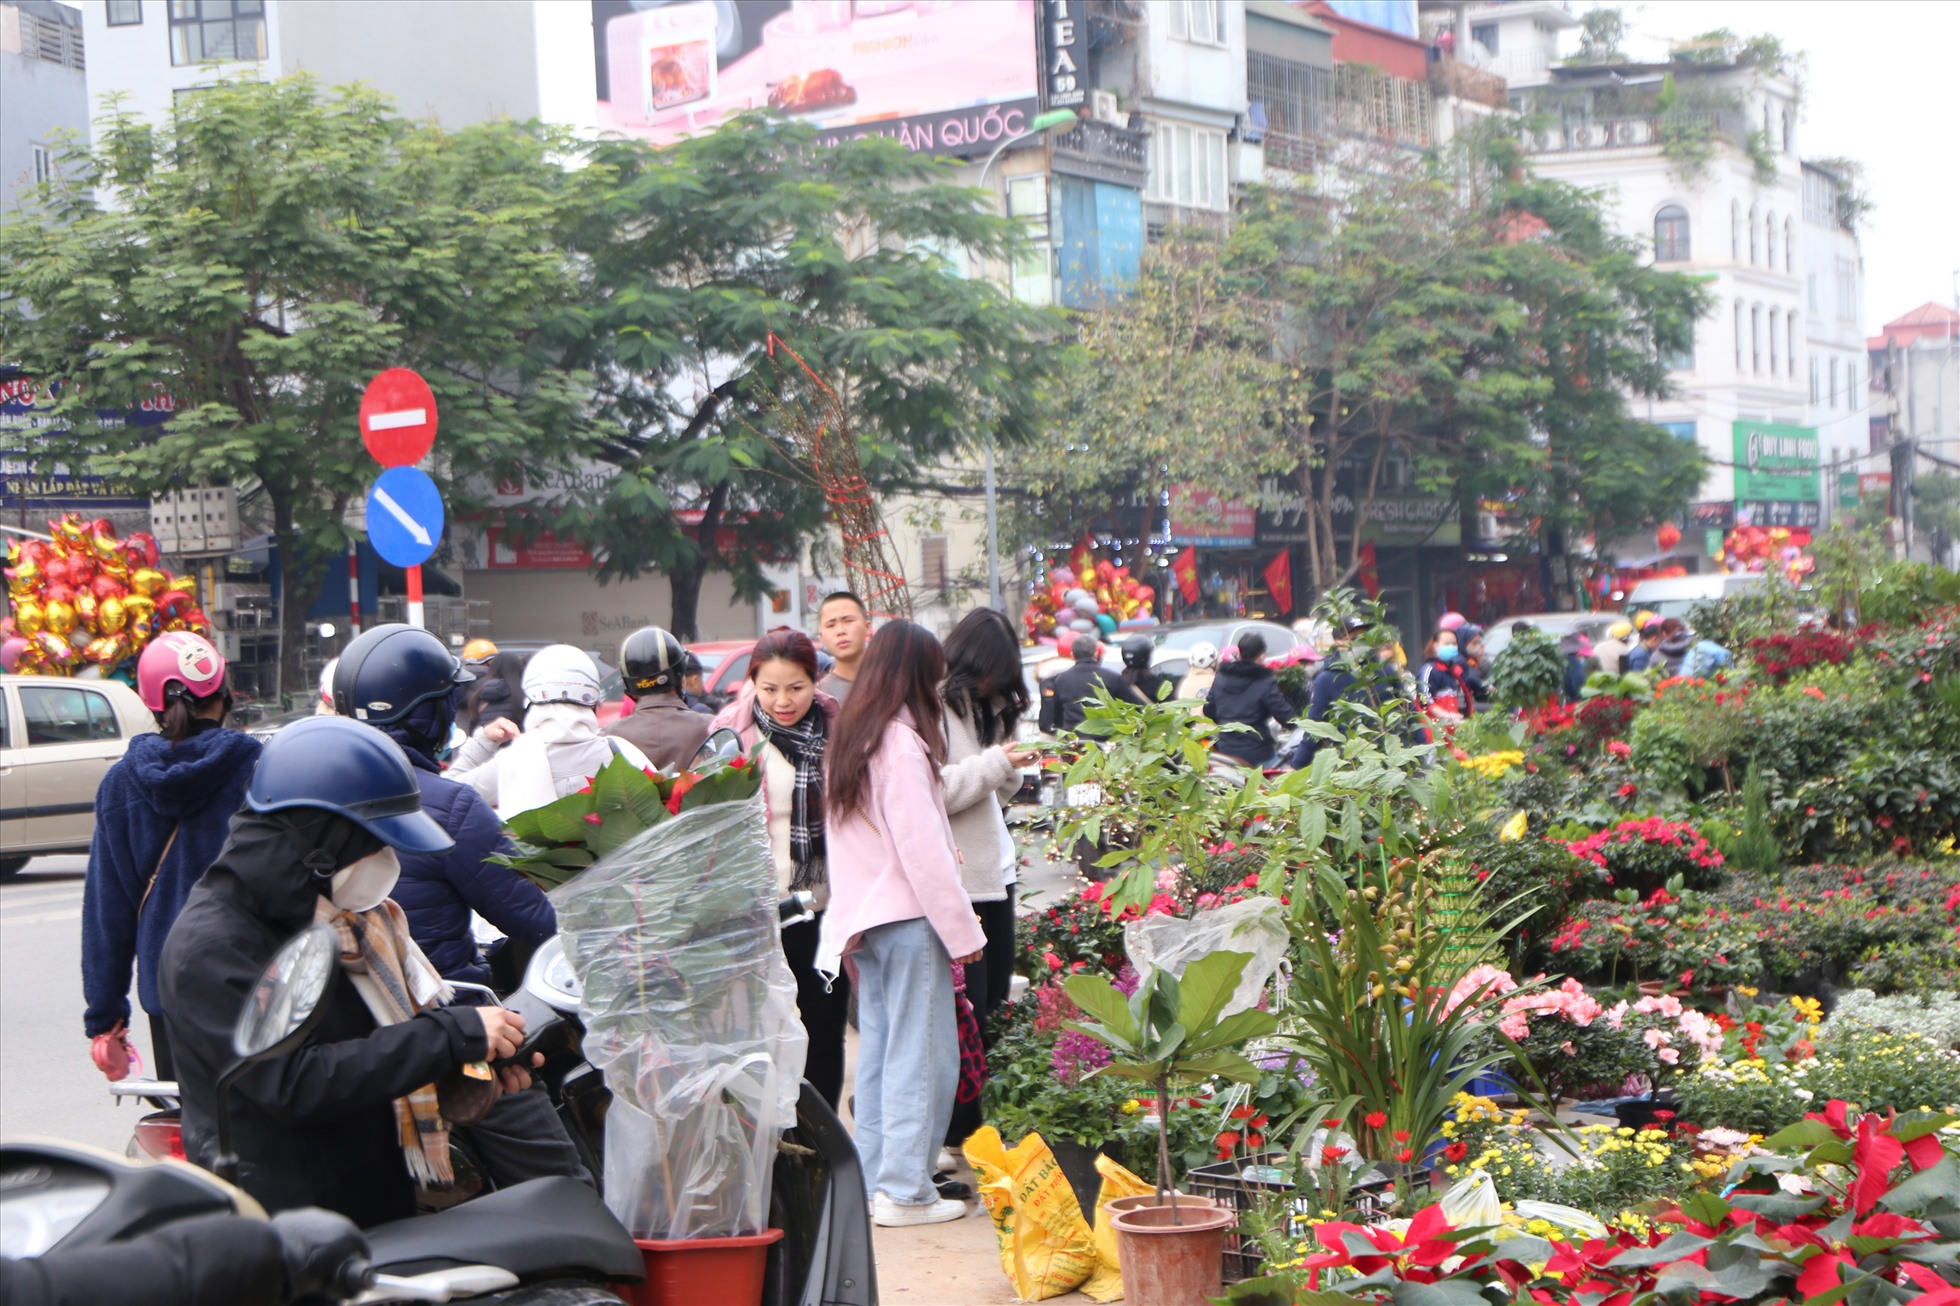 Chợ hoa, cây cảnh lâu đời nhất nhì tại Hà Nội này luôn là điểm đến không thể bỏ qua của người dân mua sắm Tết dịp cuối năm. Ảnh: Hữu Chánh